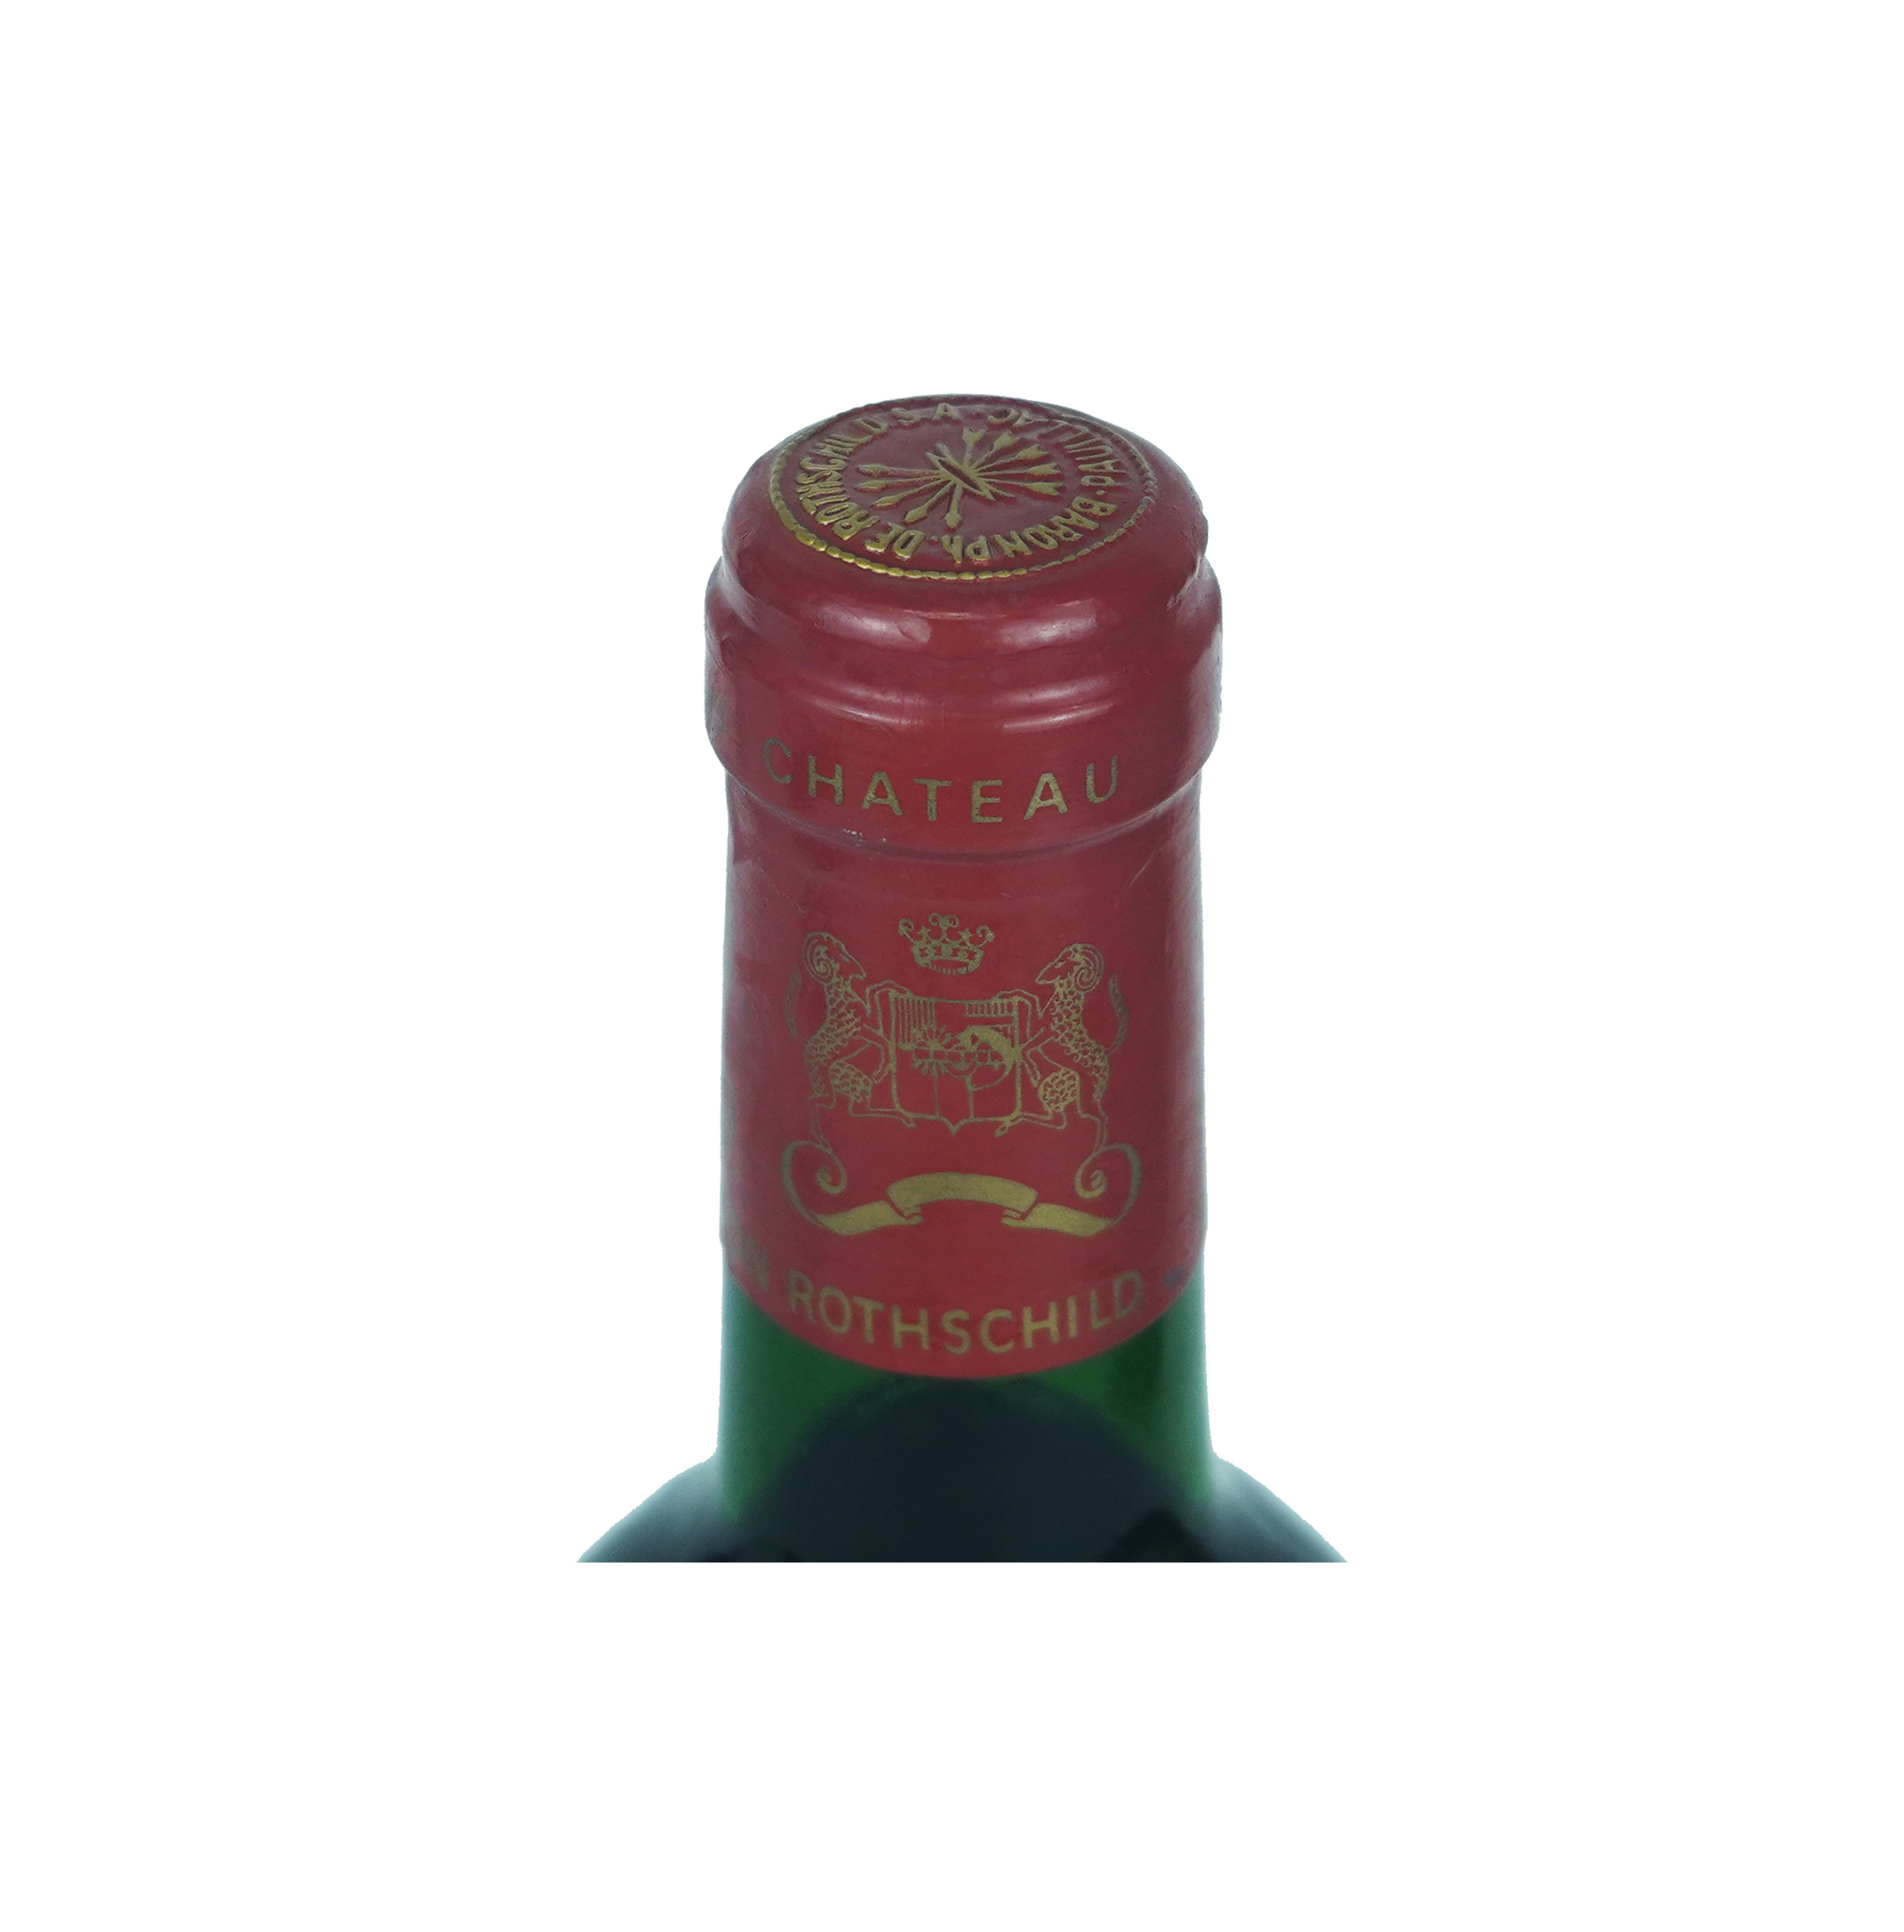 シャトー ムートン ロートシルト 1985年 CHATEAU MOUTON ROTHSCHILD フランス ボルドー 赤ワイン 750ml |  selead shop